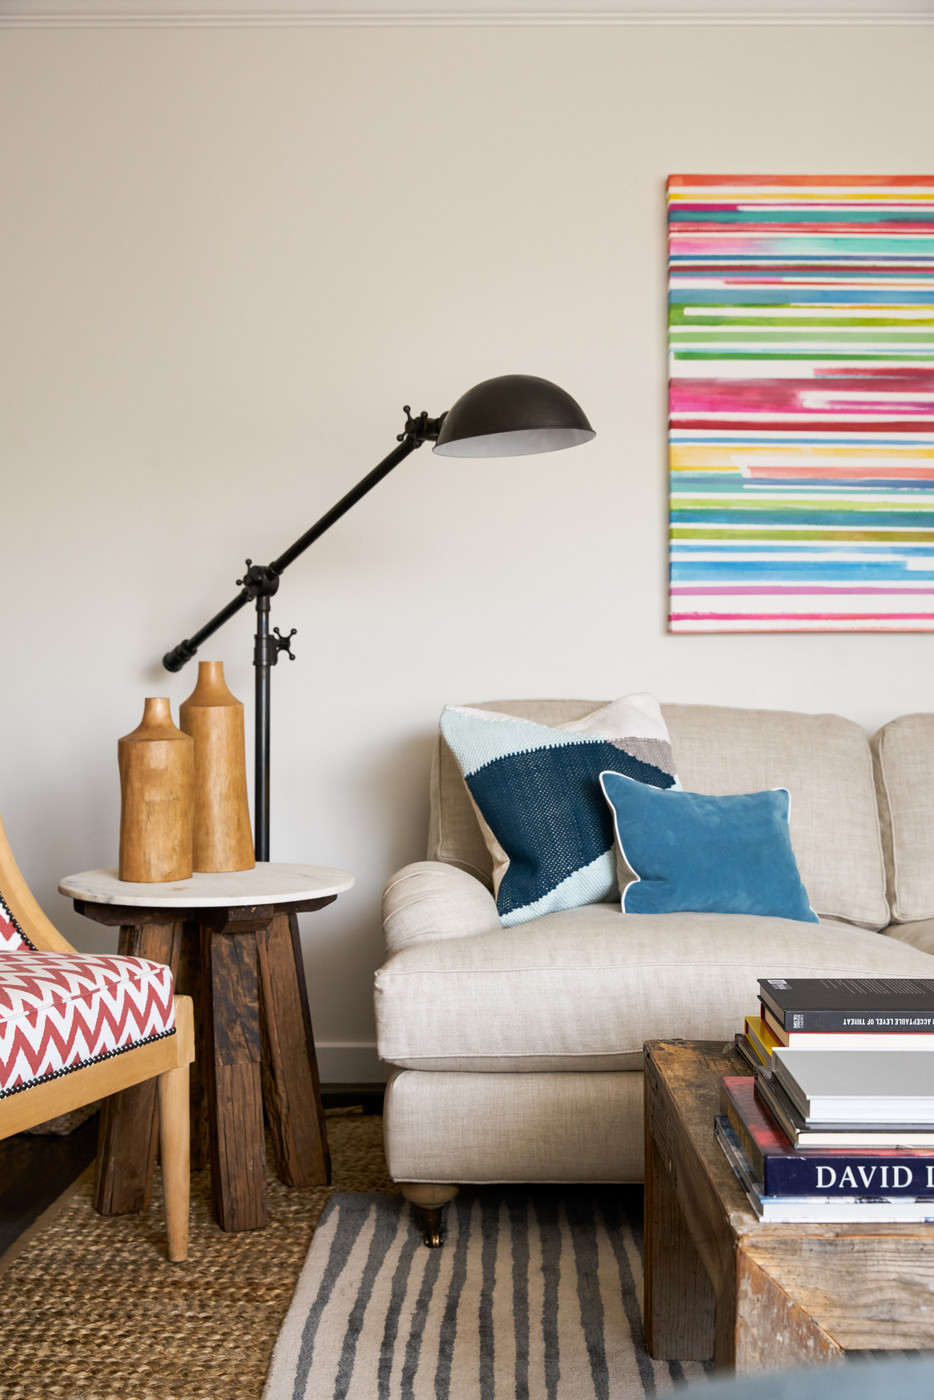 20 Modern Corner Lighting Ideas, Floor Lamp For Corner Of Room